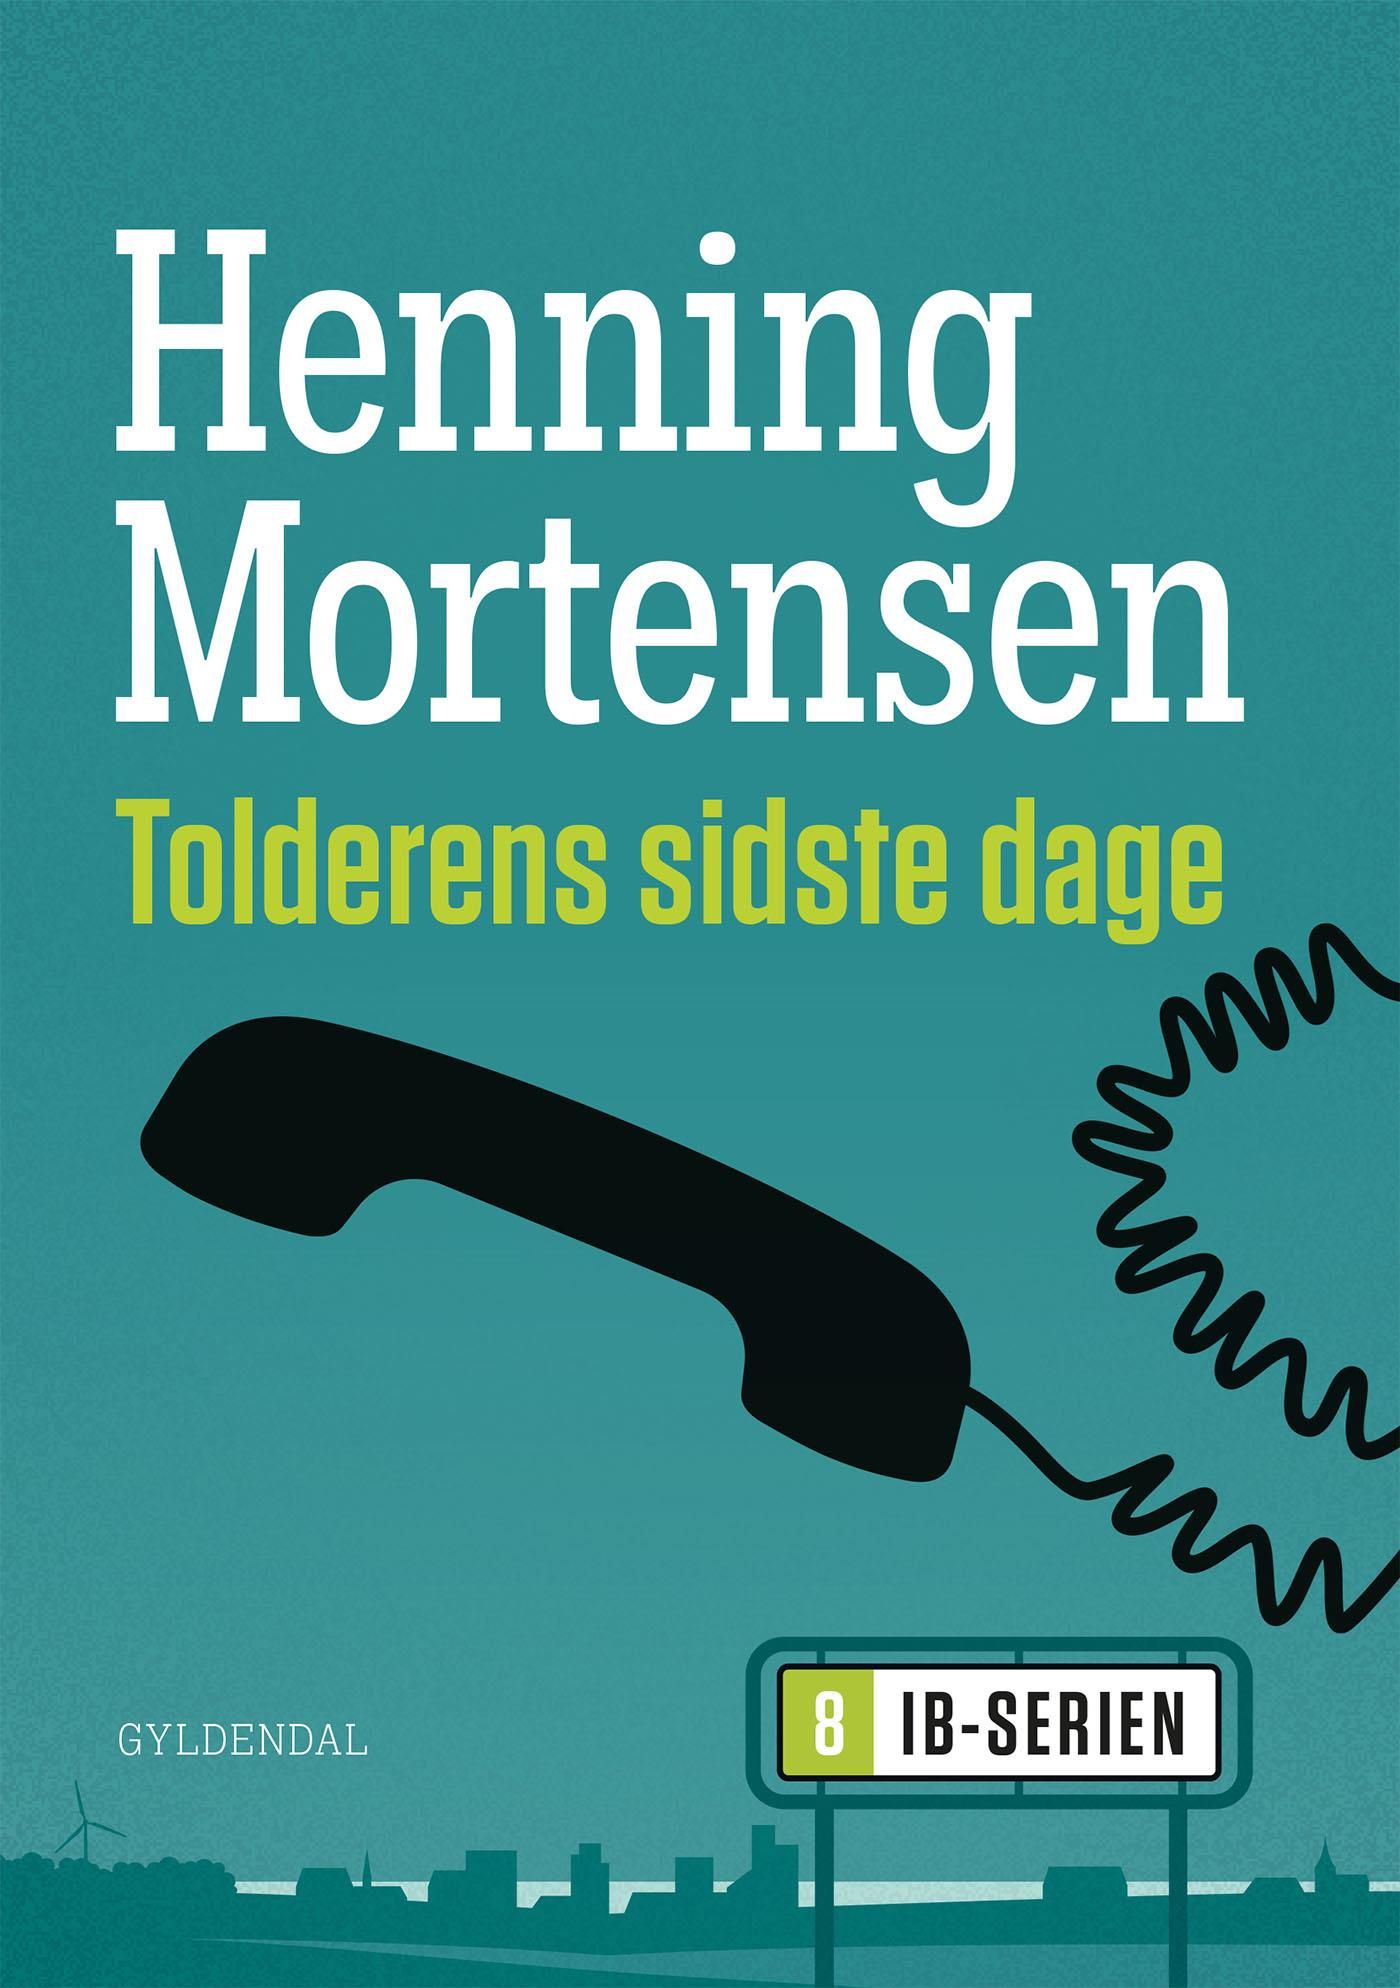 Tolderens sidste dage, eBook by Henning Mortensen